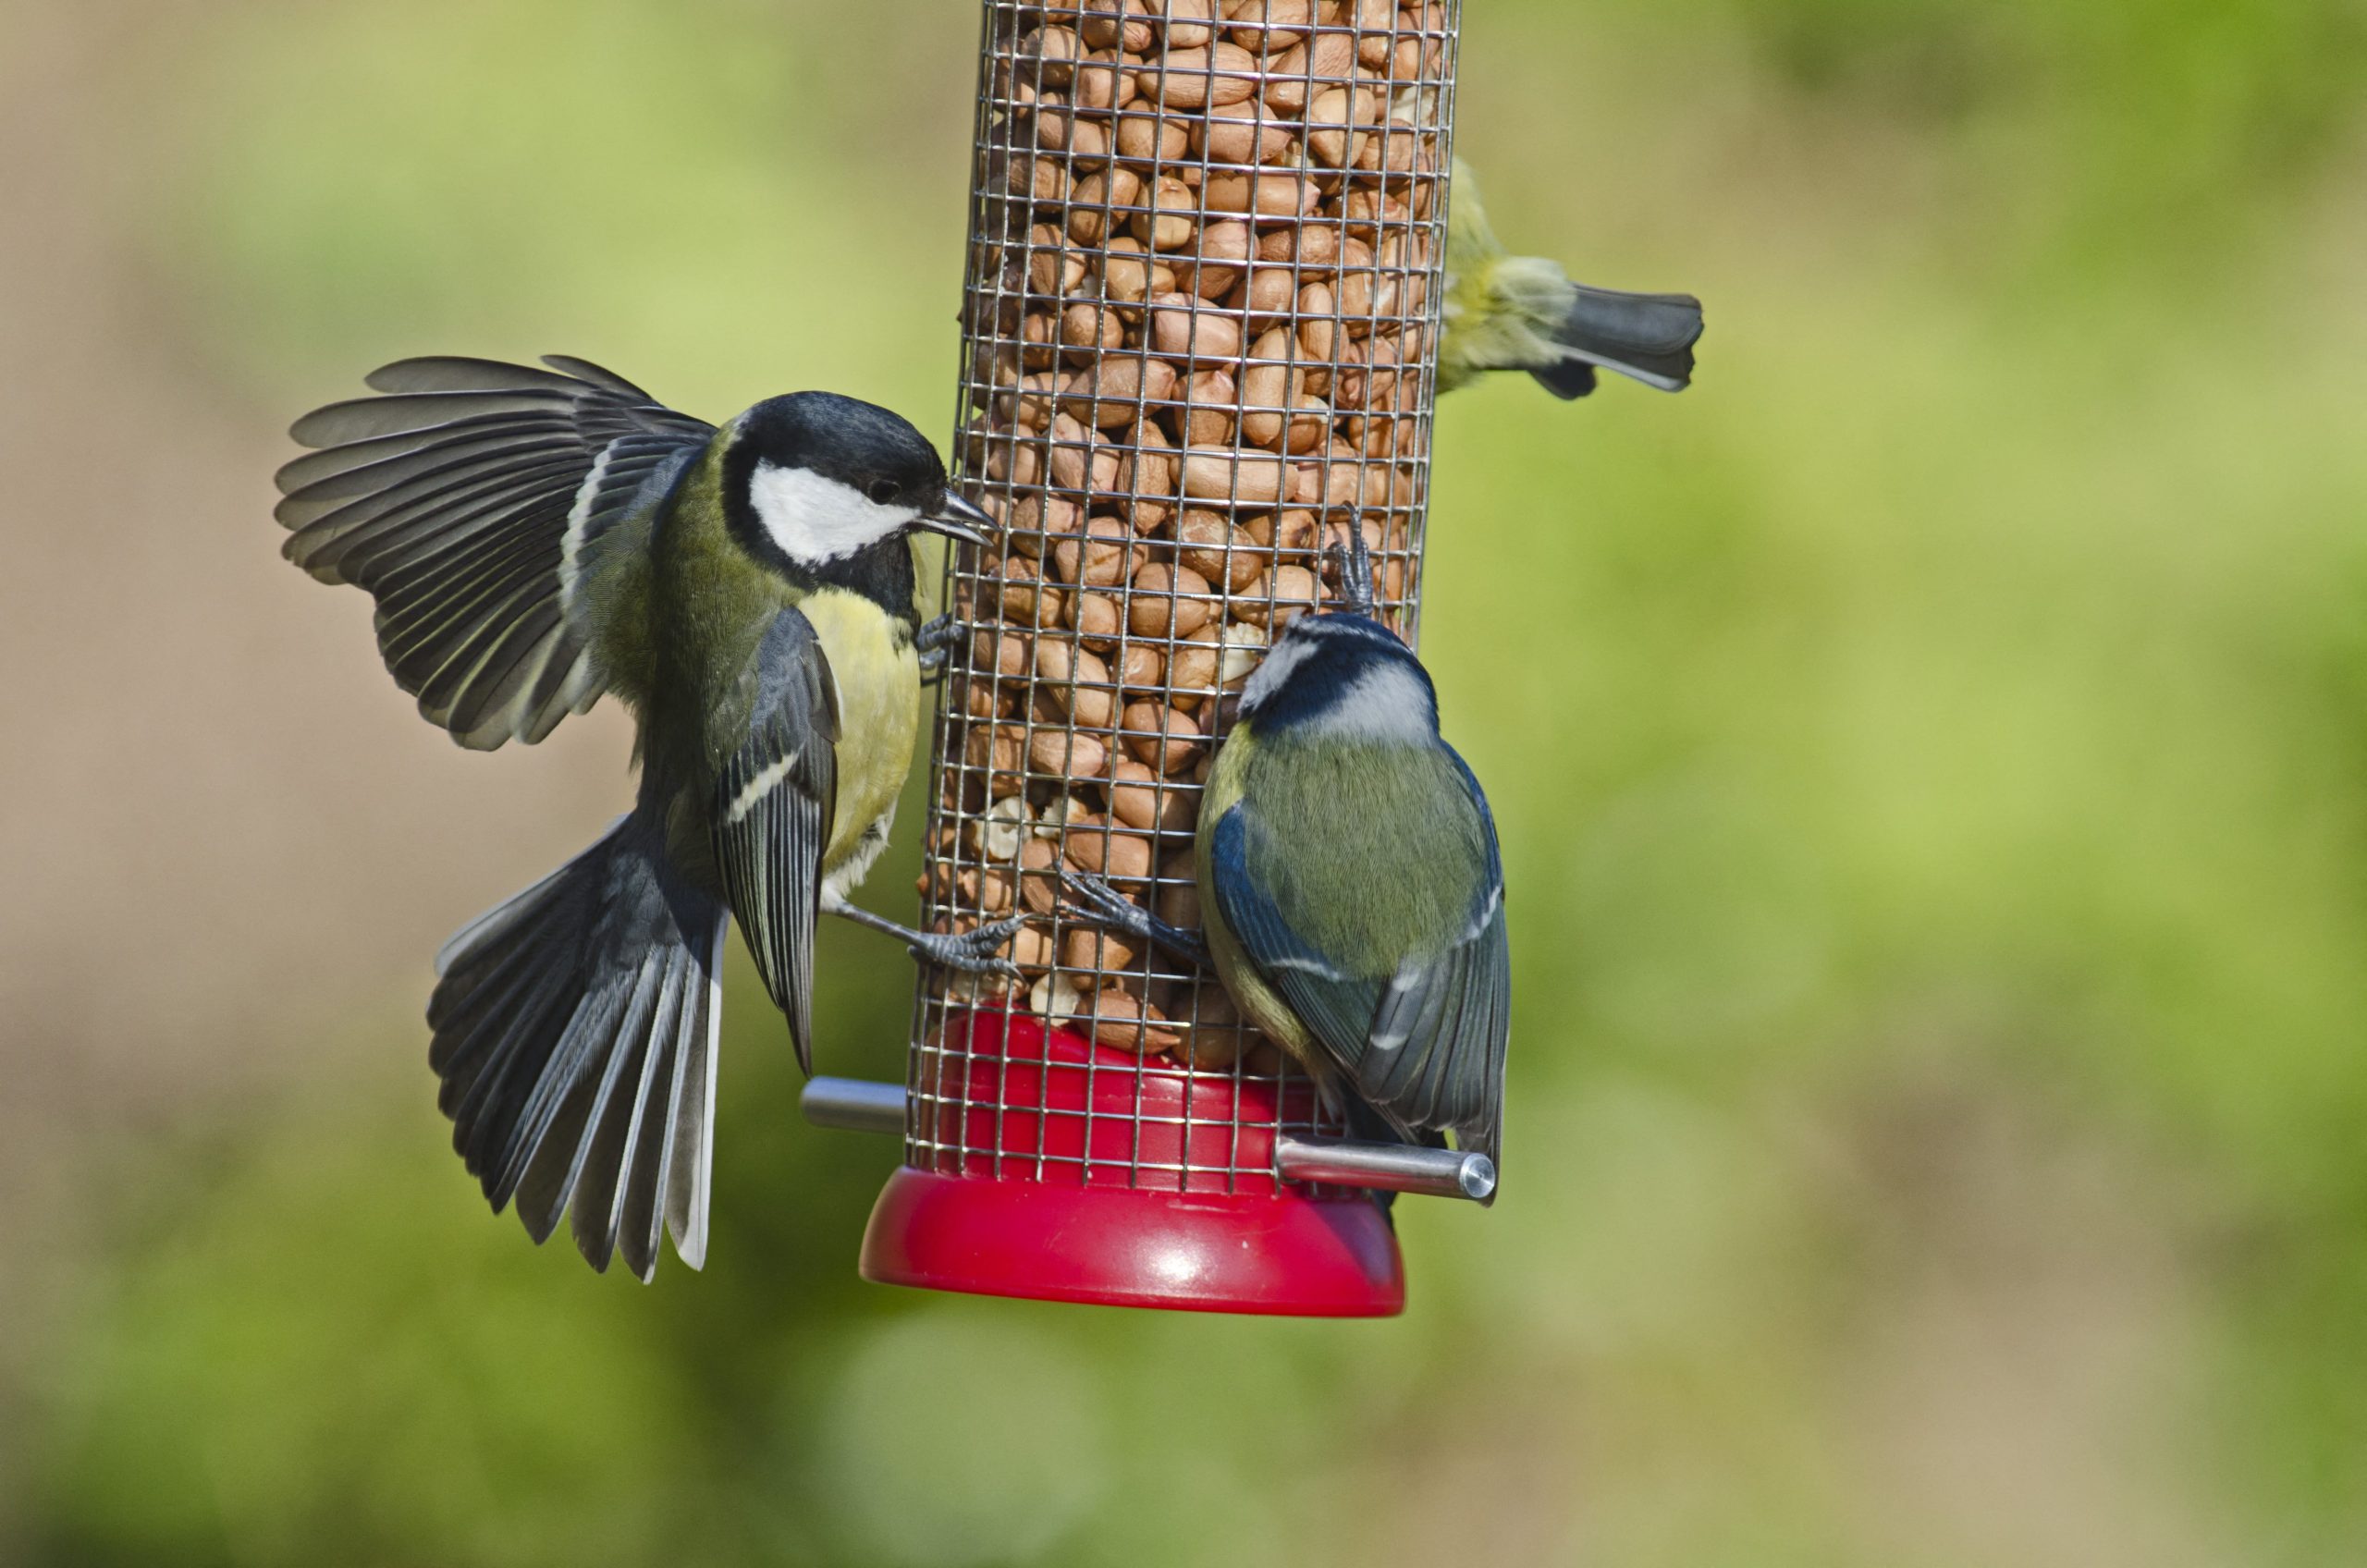 Alimentation et pâtée pour vos oiseaux du jardin